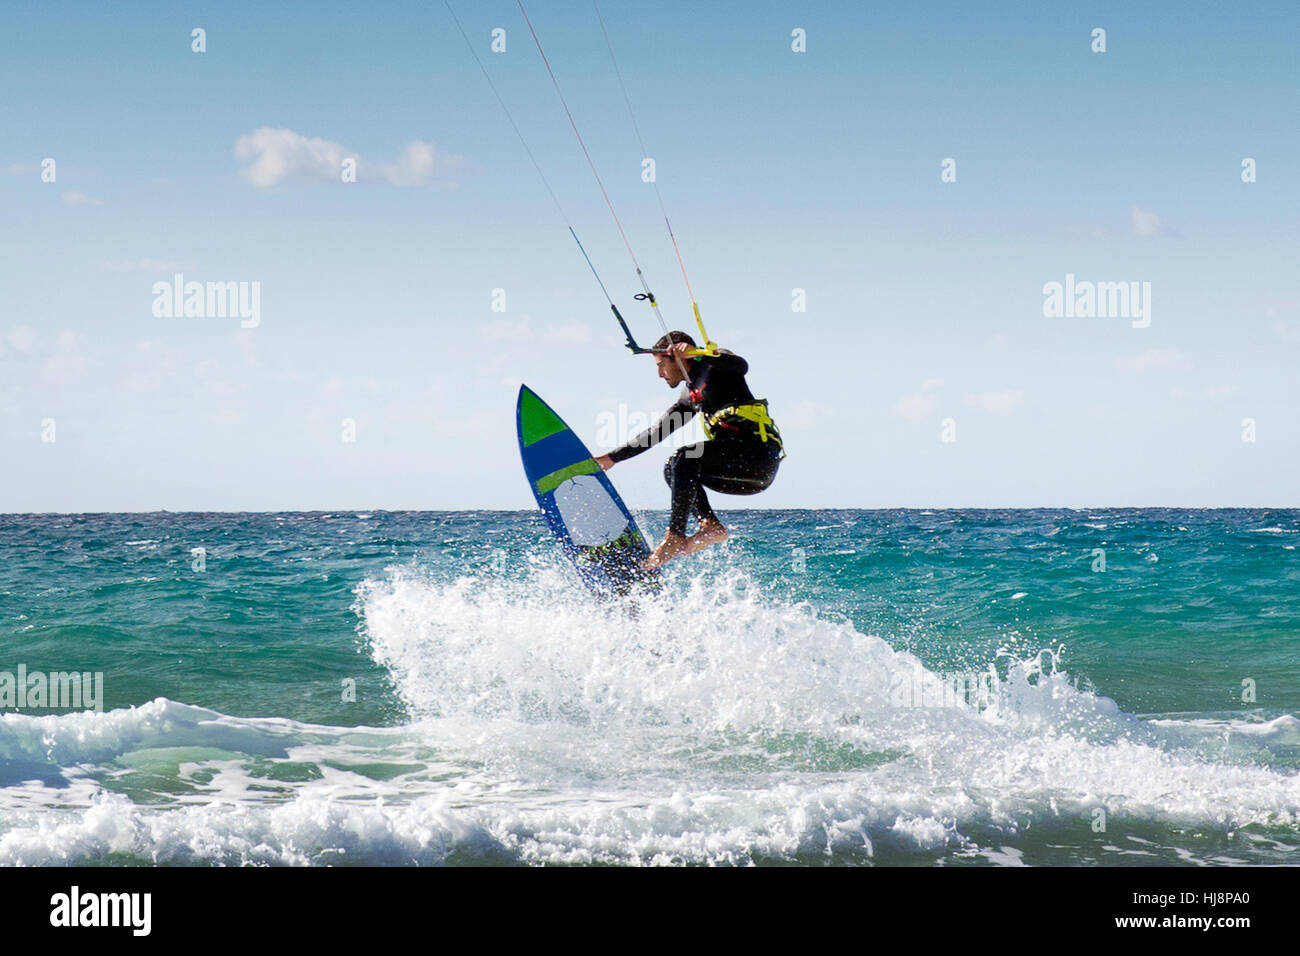 Le kitesurf avec hematite homme surfboard, Los Lances, Tarifa, Cadix, Andalousie, Espagne Banque D'Images